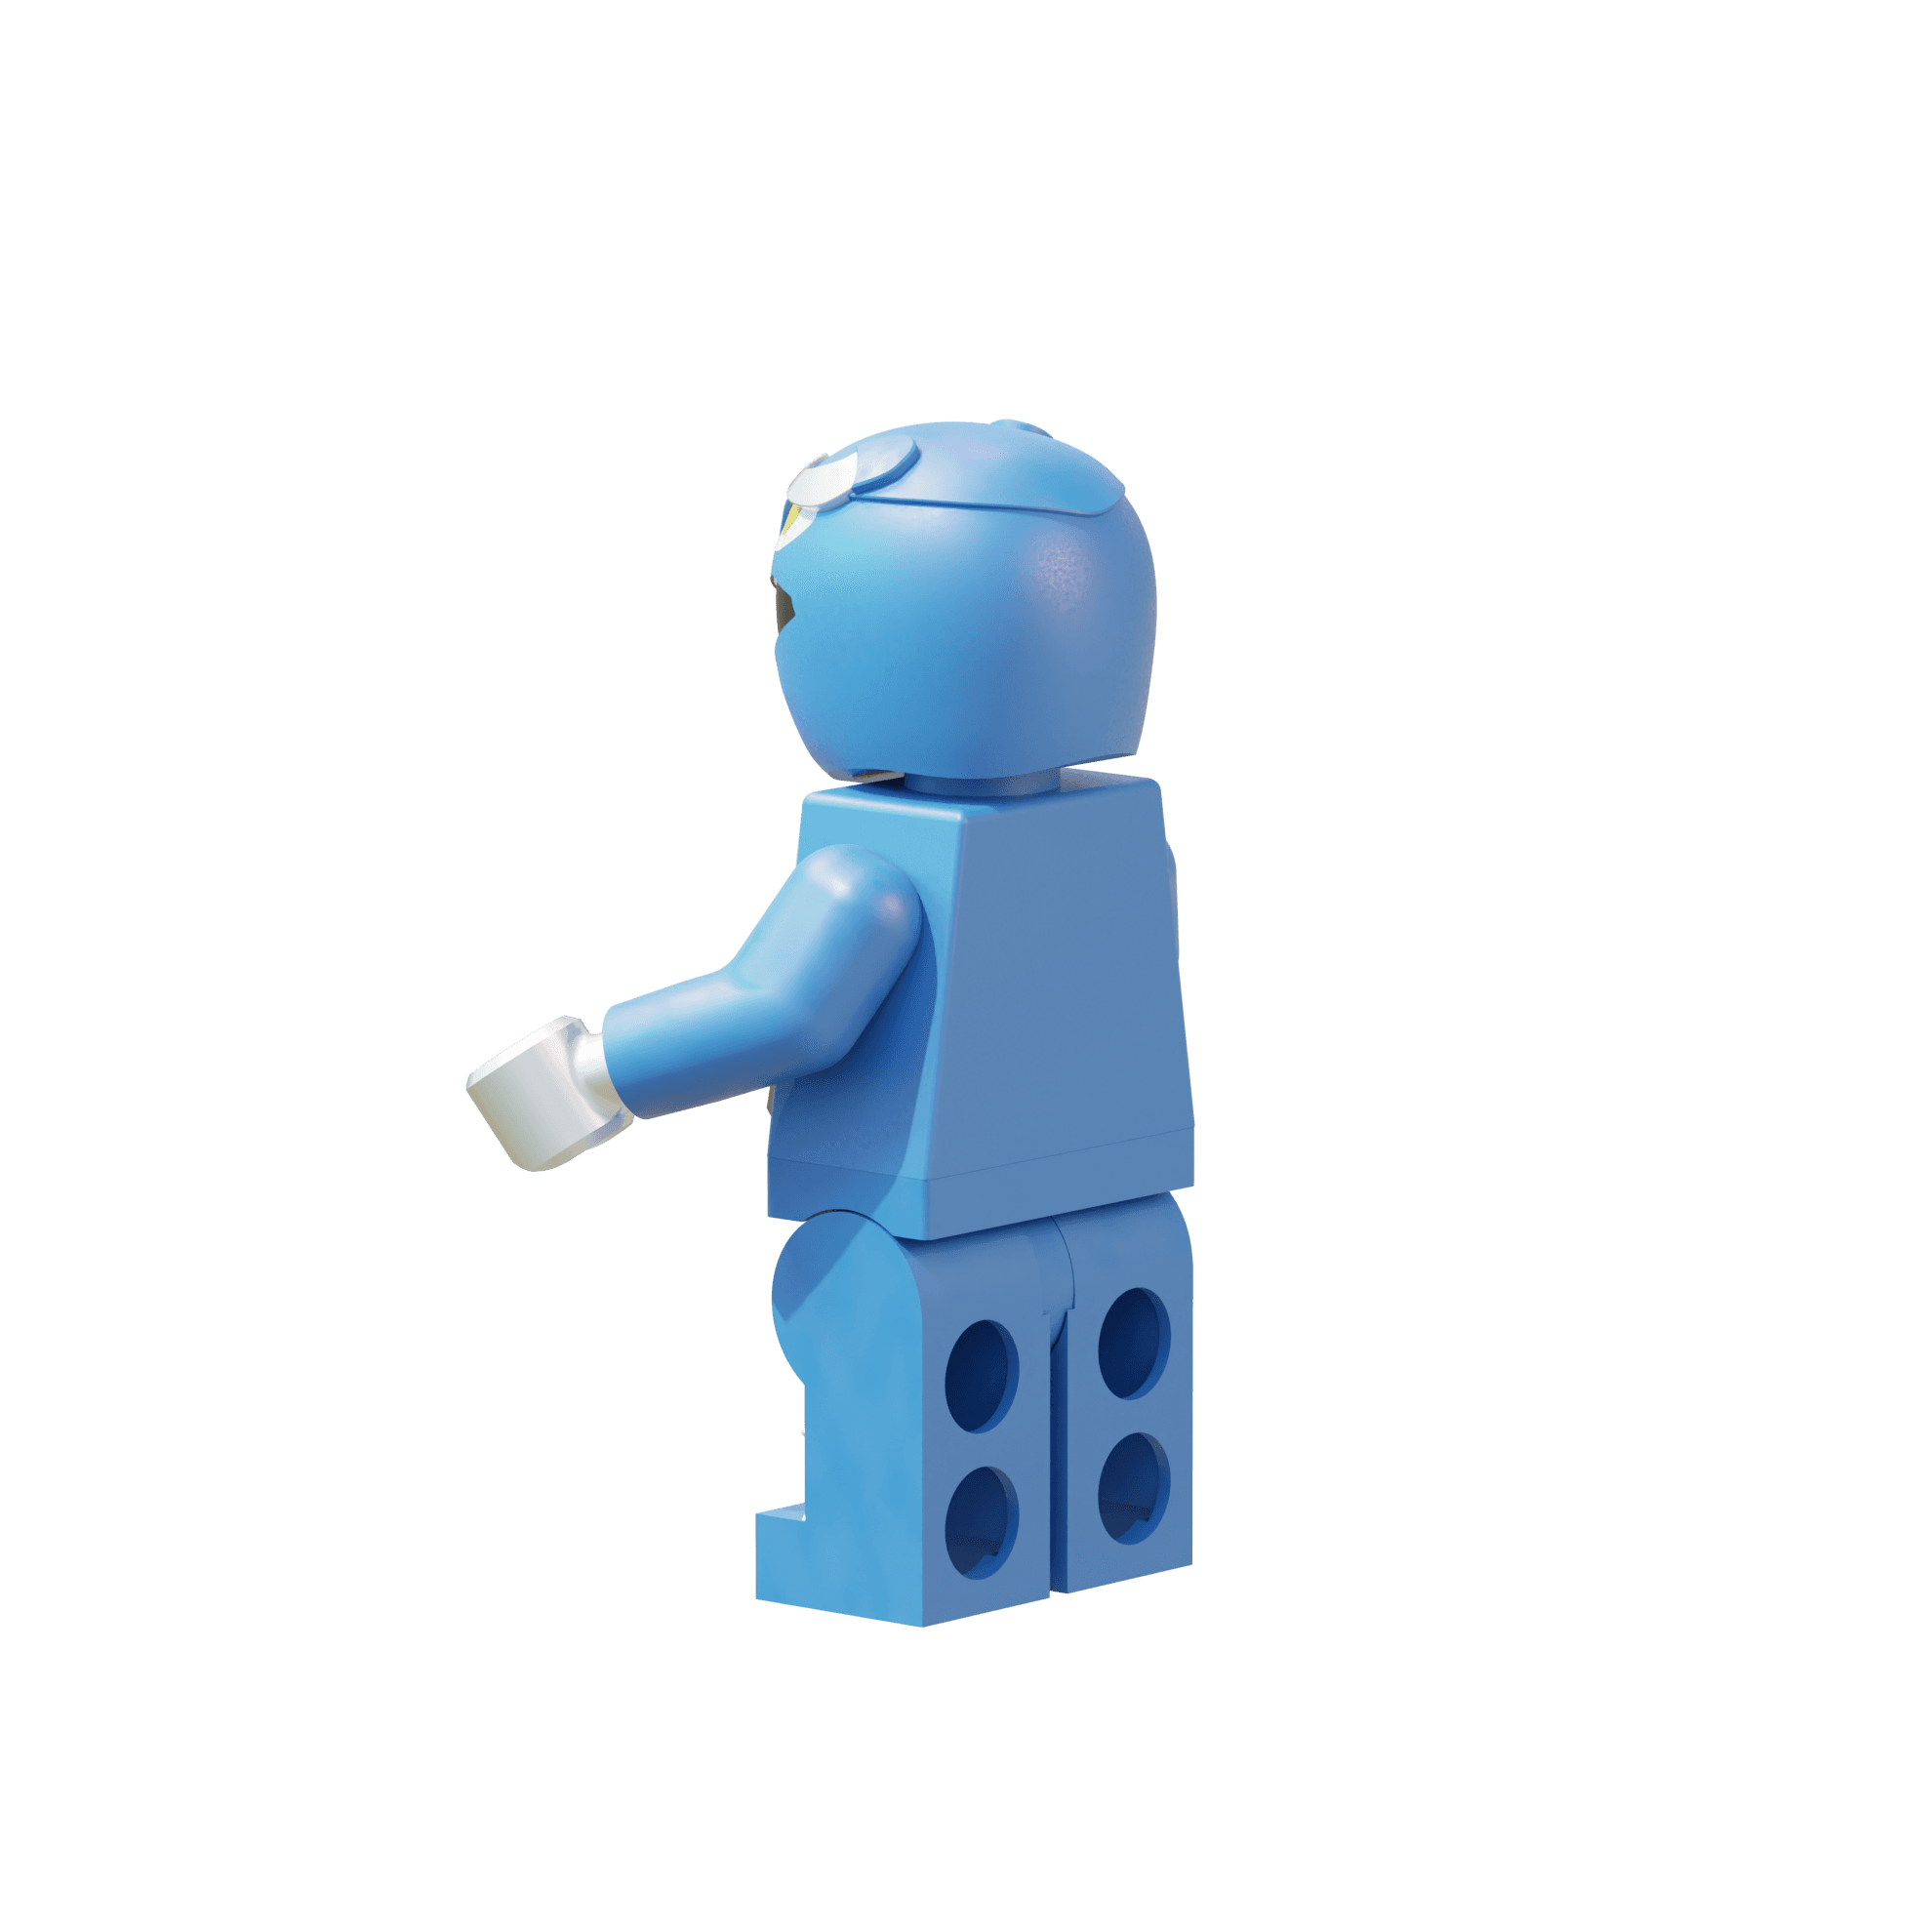 LEGO Blue Ranger 3d model